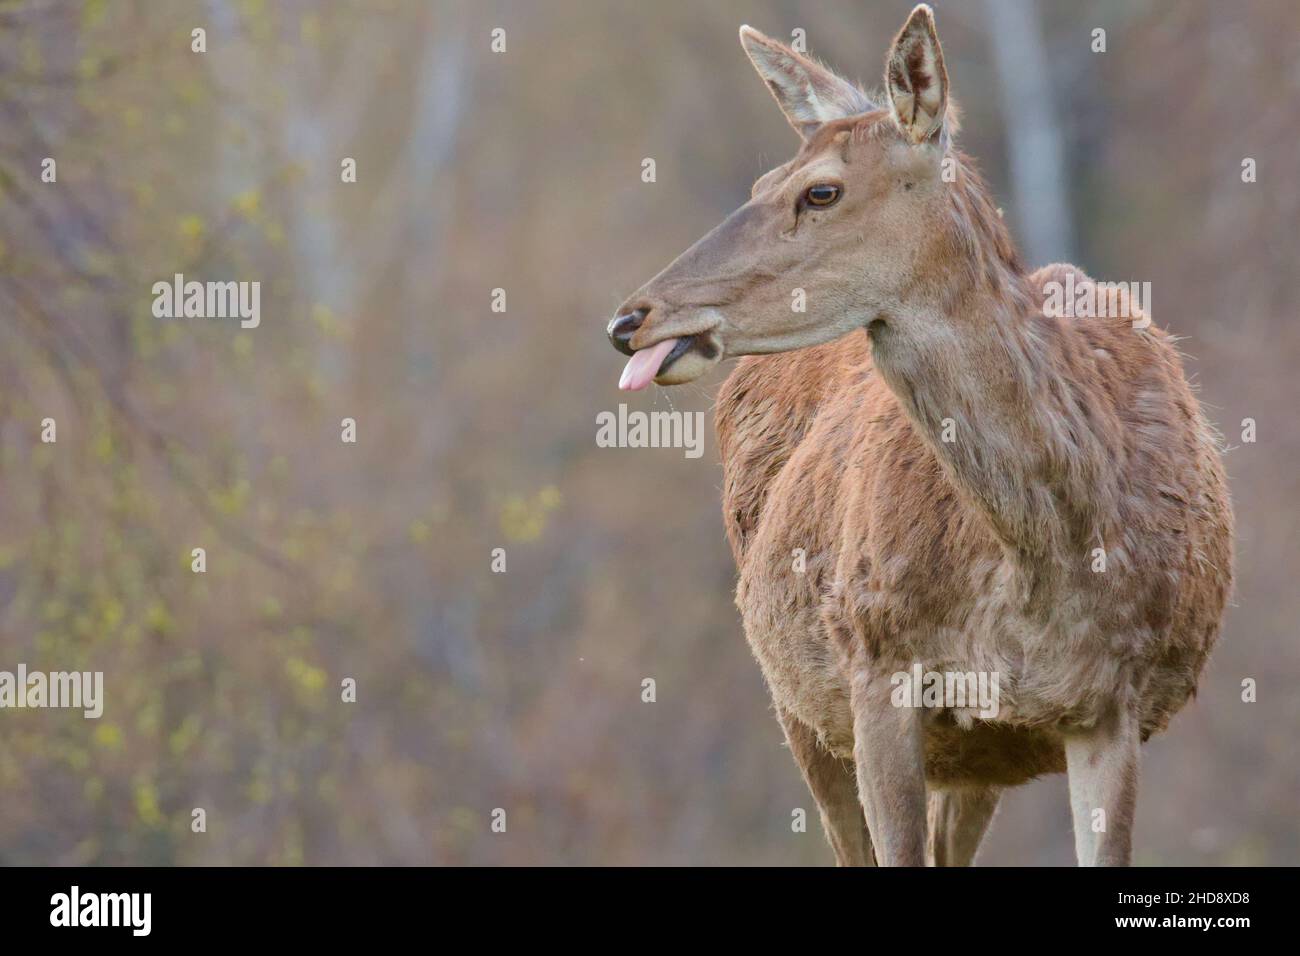 Primo piano della linguetta sporgente del cervo. Foto Stock